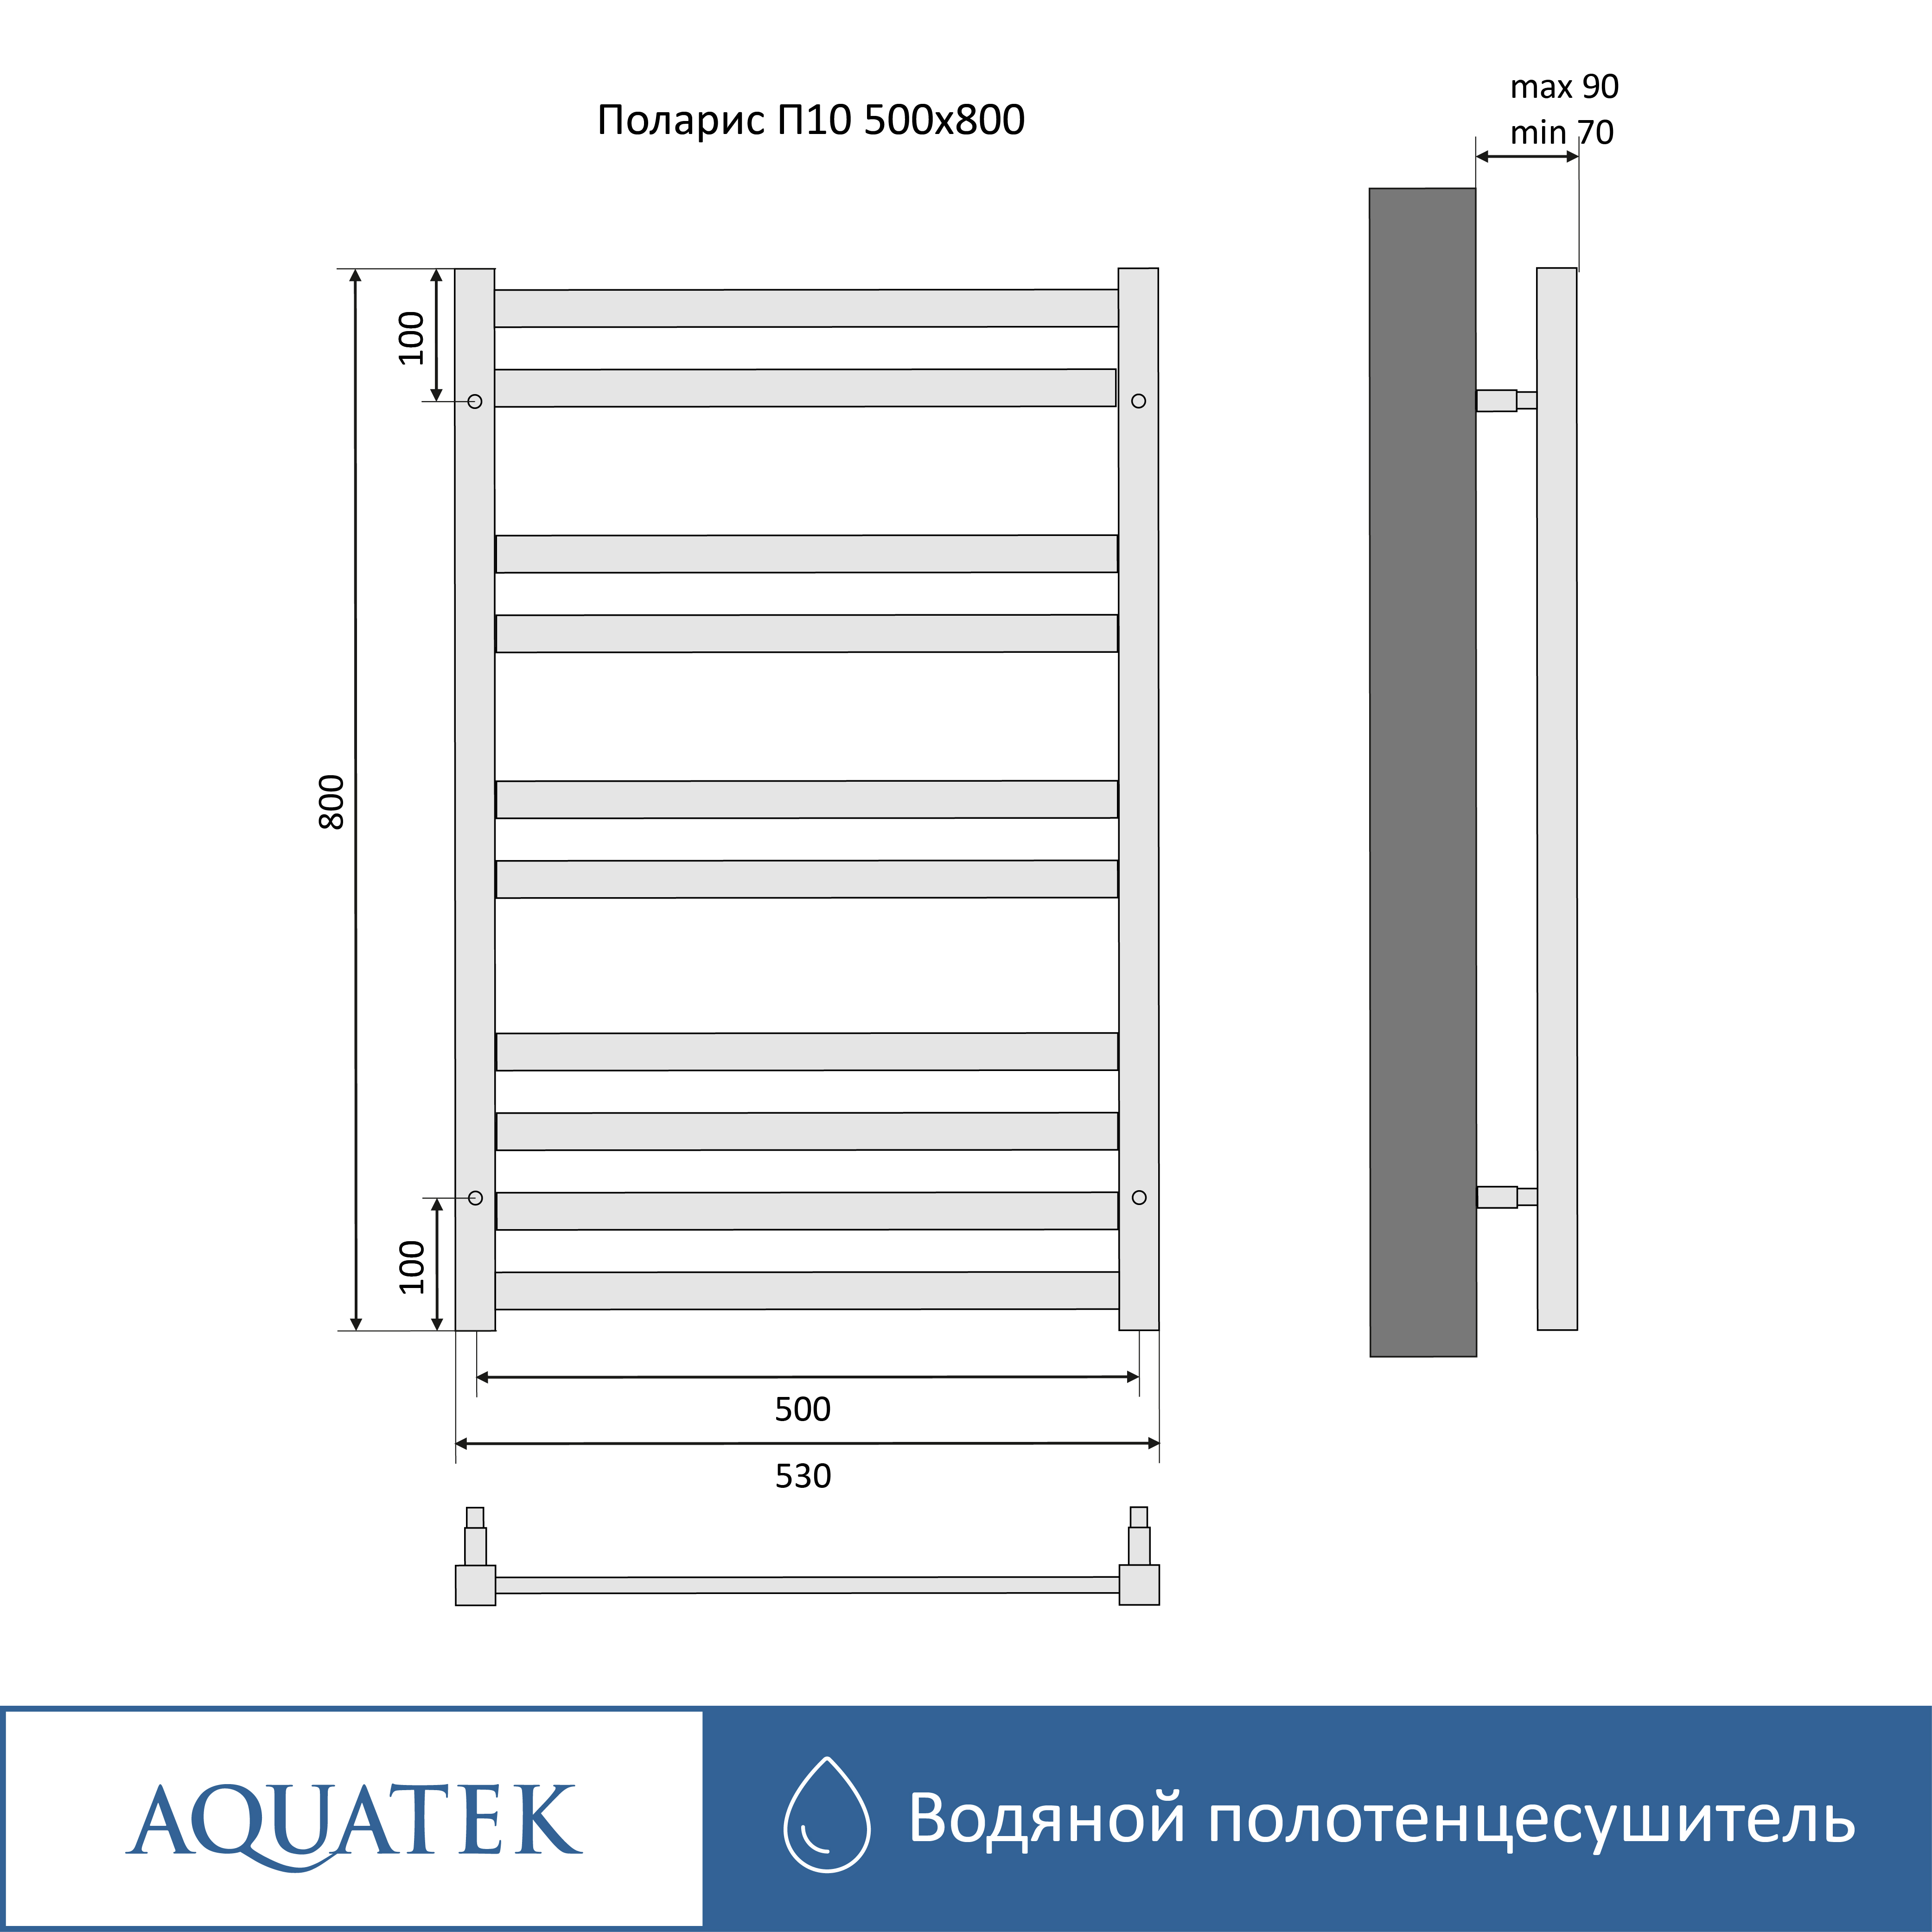 Полотенцесушитель водяной Aquatek Поларис П10 500х800 AQ KO1080CH - 14